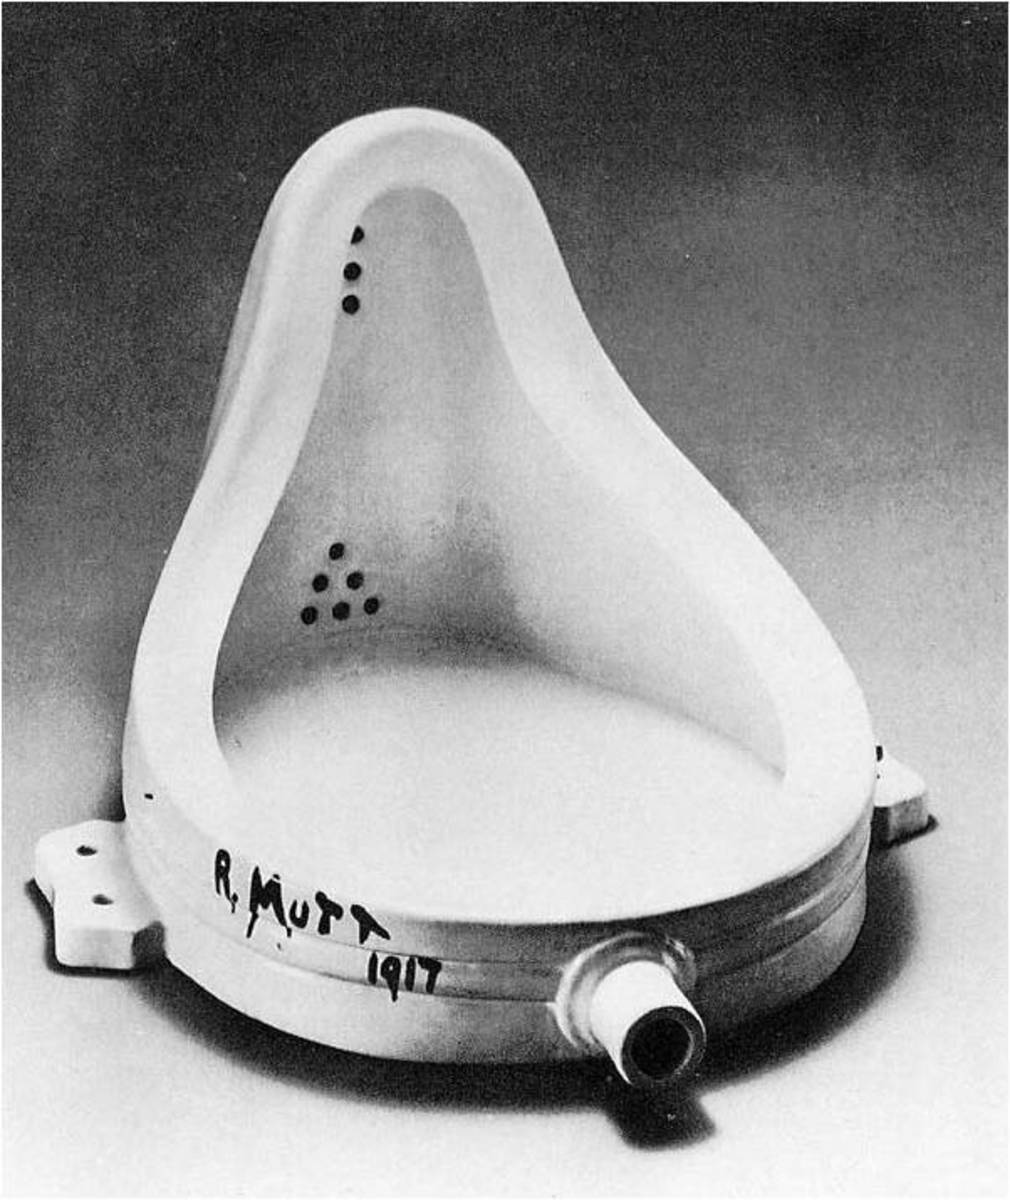 Marcel Duchamp, Fountain (1917), 14x19x24in, ceramic urinal. Tate Modern.